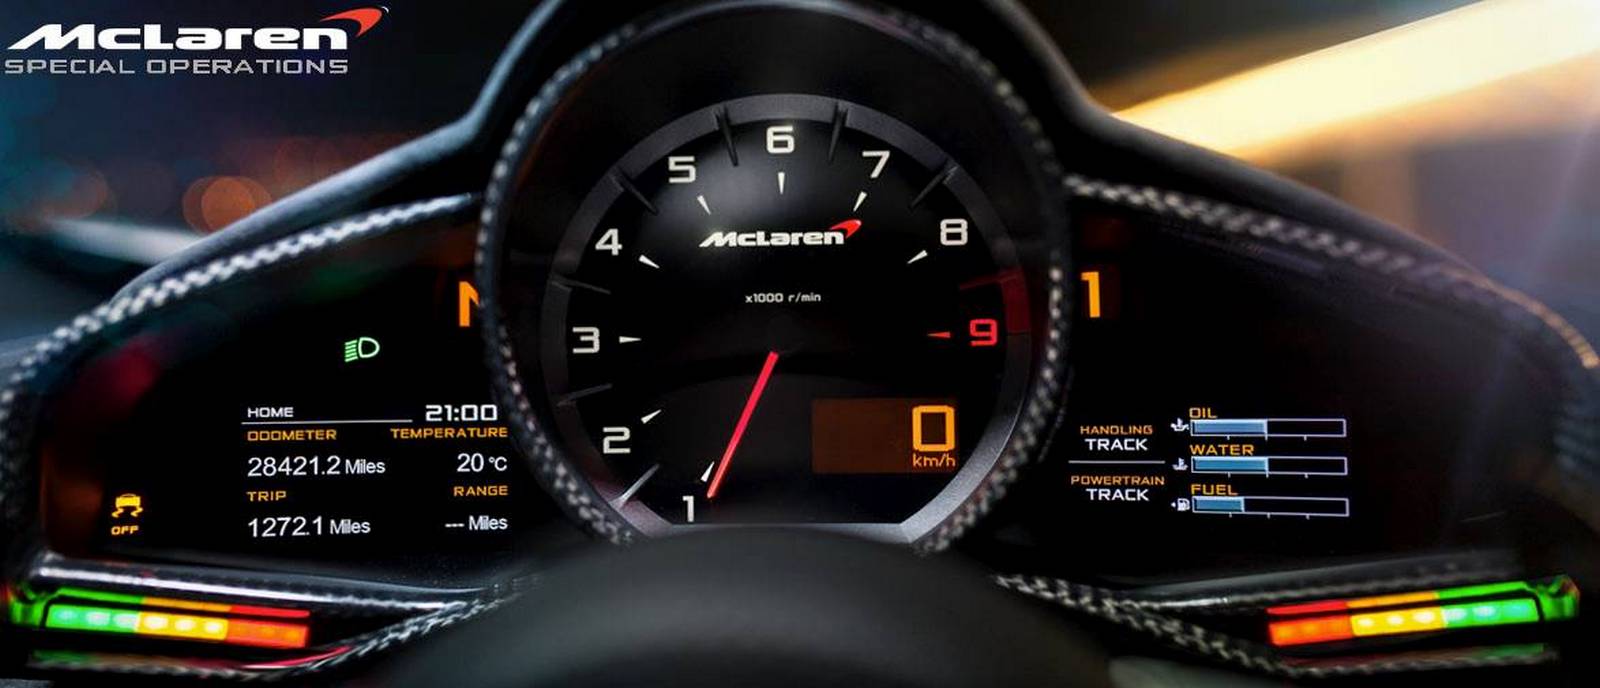 McLaren MSO 12C Concept Car